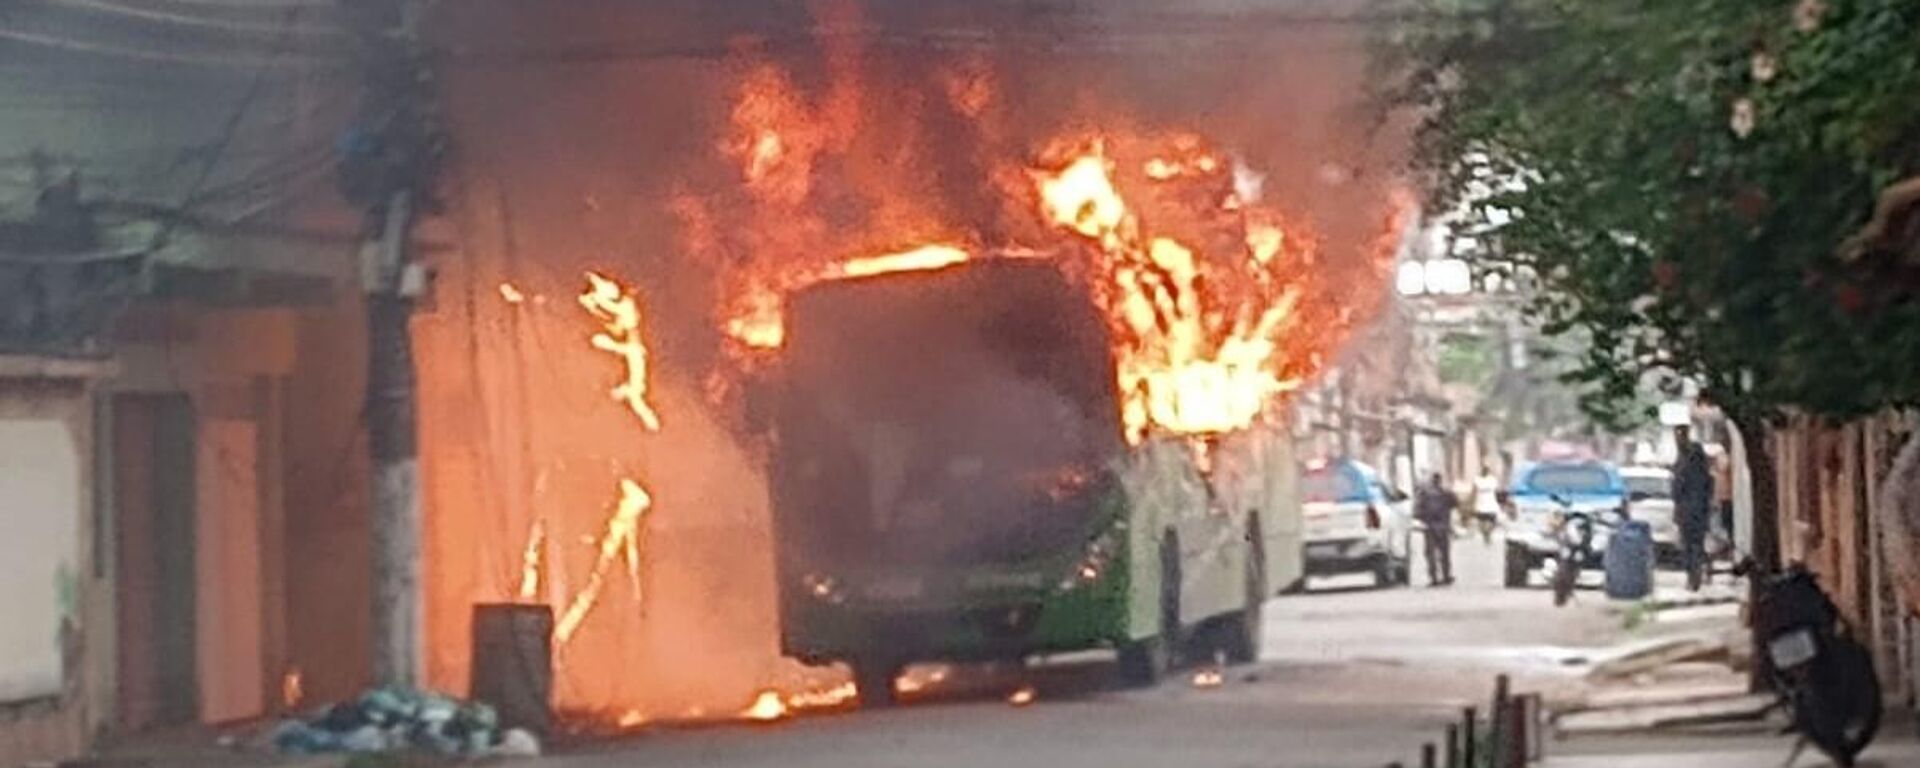 Ônibus incendiado em Duque de Caxias, no estado do Rio de Janeiro, em 28 de setembro de 2023 - Sputnik Brasil, 1920, 28.09.2023